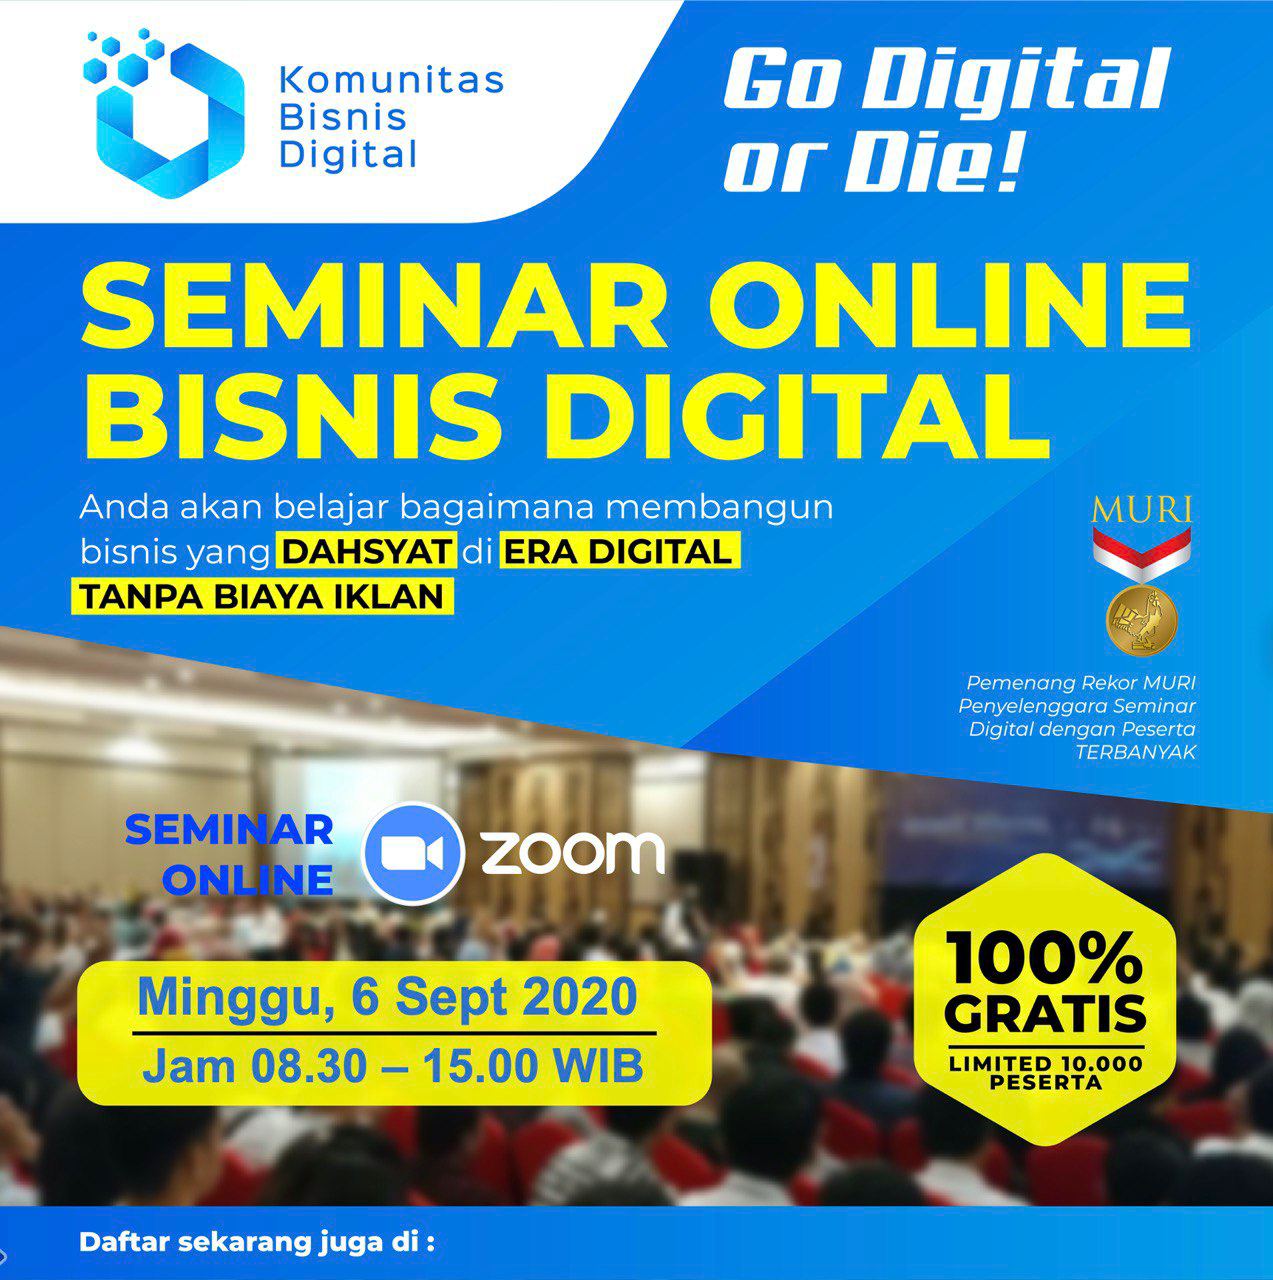 Seminar Digital GRATIS 100%